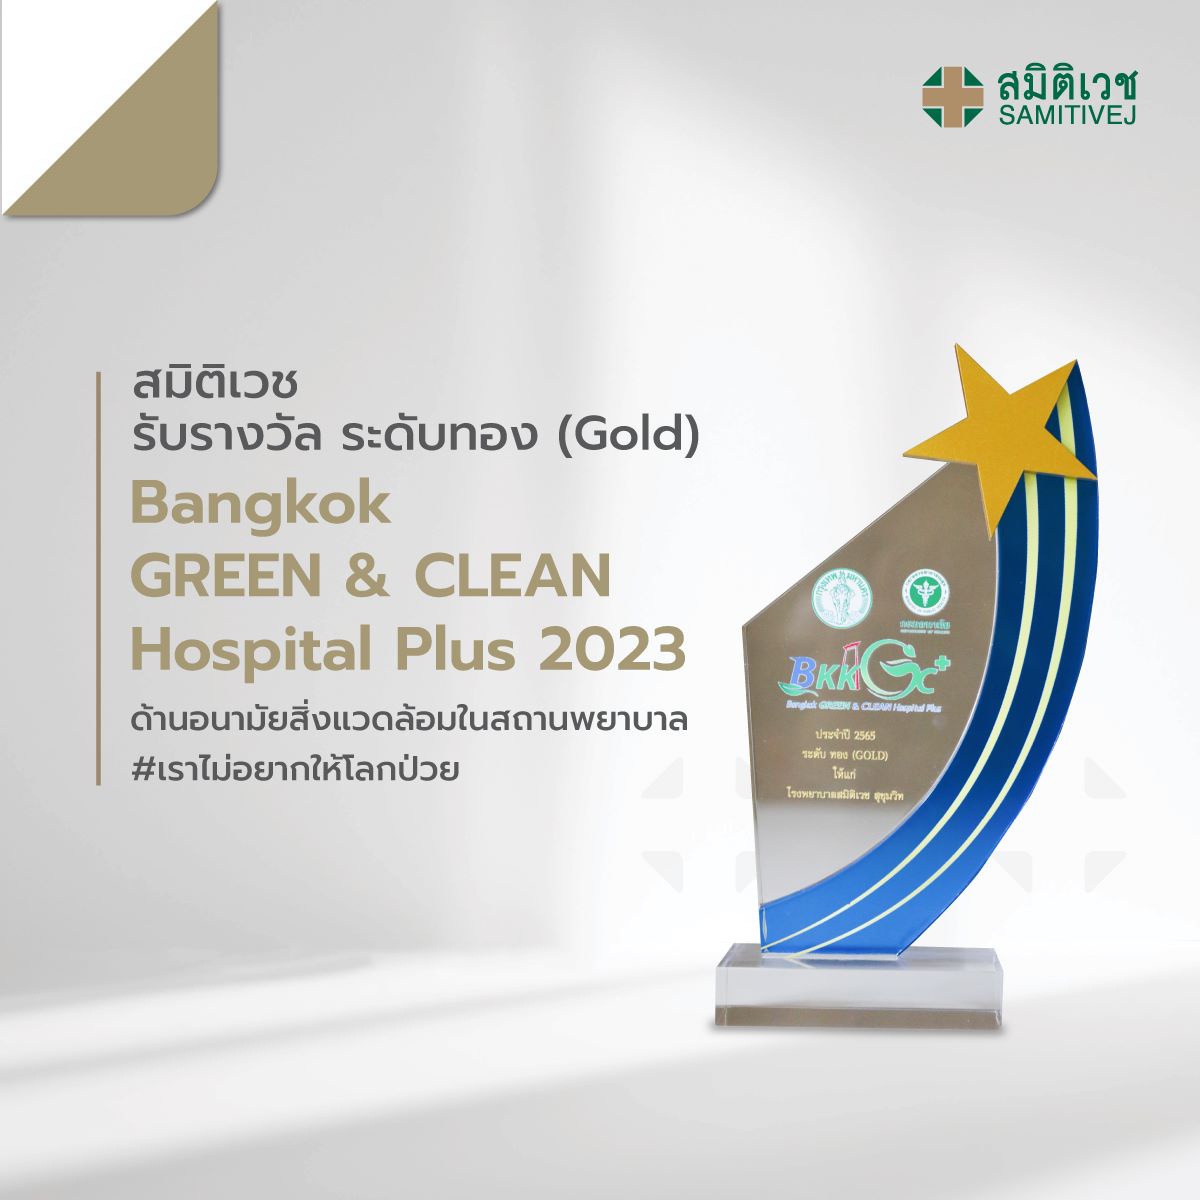 โรงพยาบาลสมิติเวช ได้รางวัล Bangkok GREEN CLEAN Hospital Plus (BKKGC ) ประจำปี ๒๕๖๖ #เราไม่อยากให้โลกป่วย